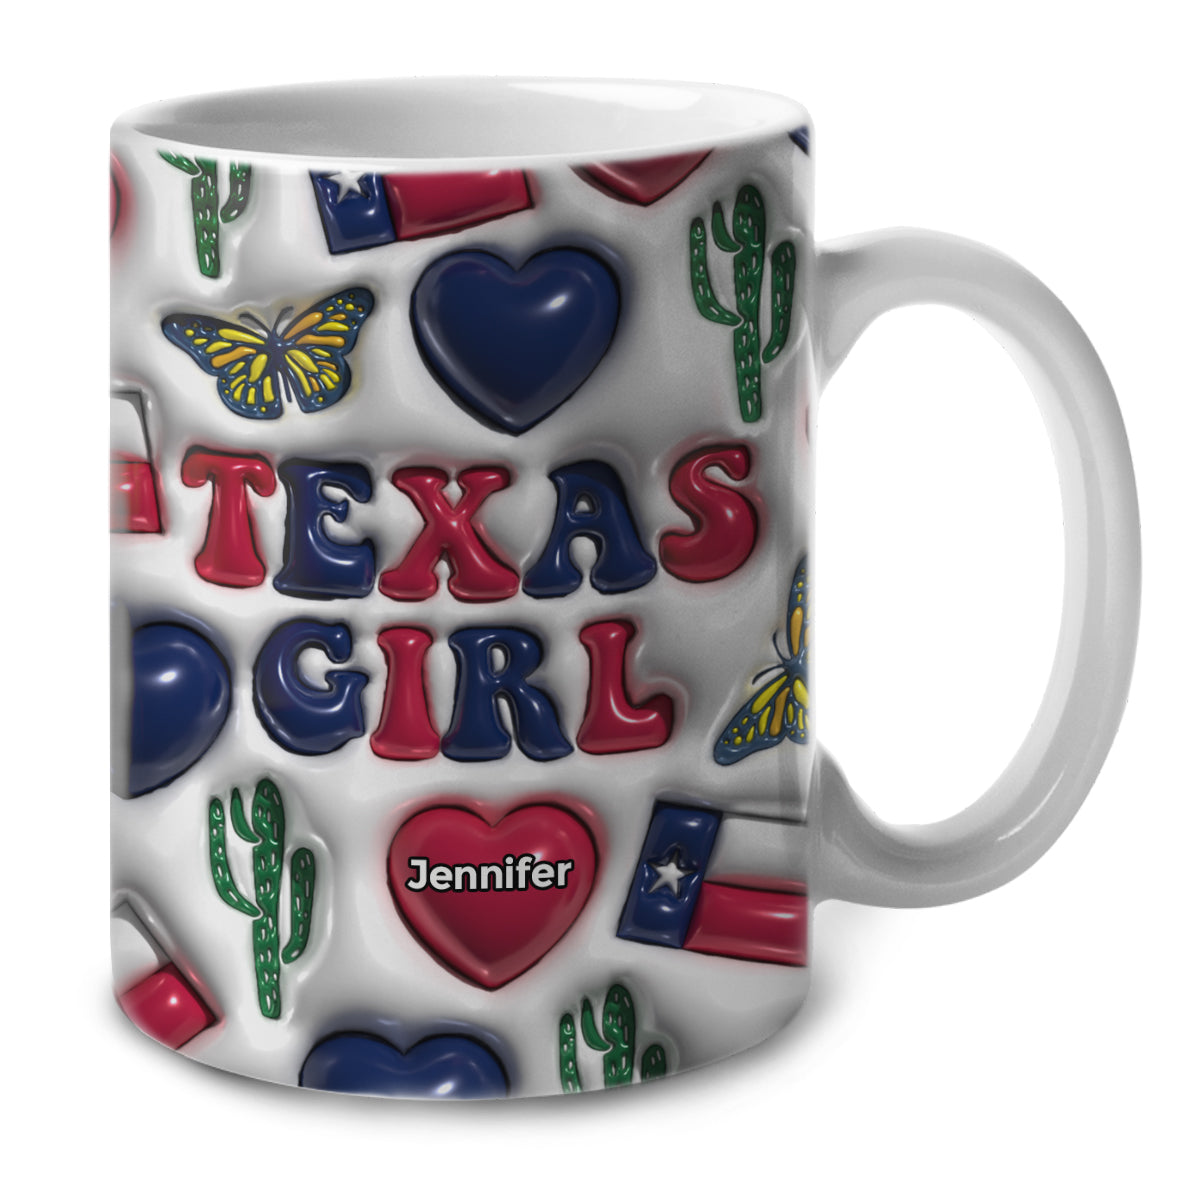 Texas Texan Girl Coffee Mug Cup With Custom Your Name